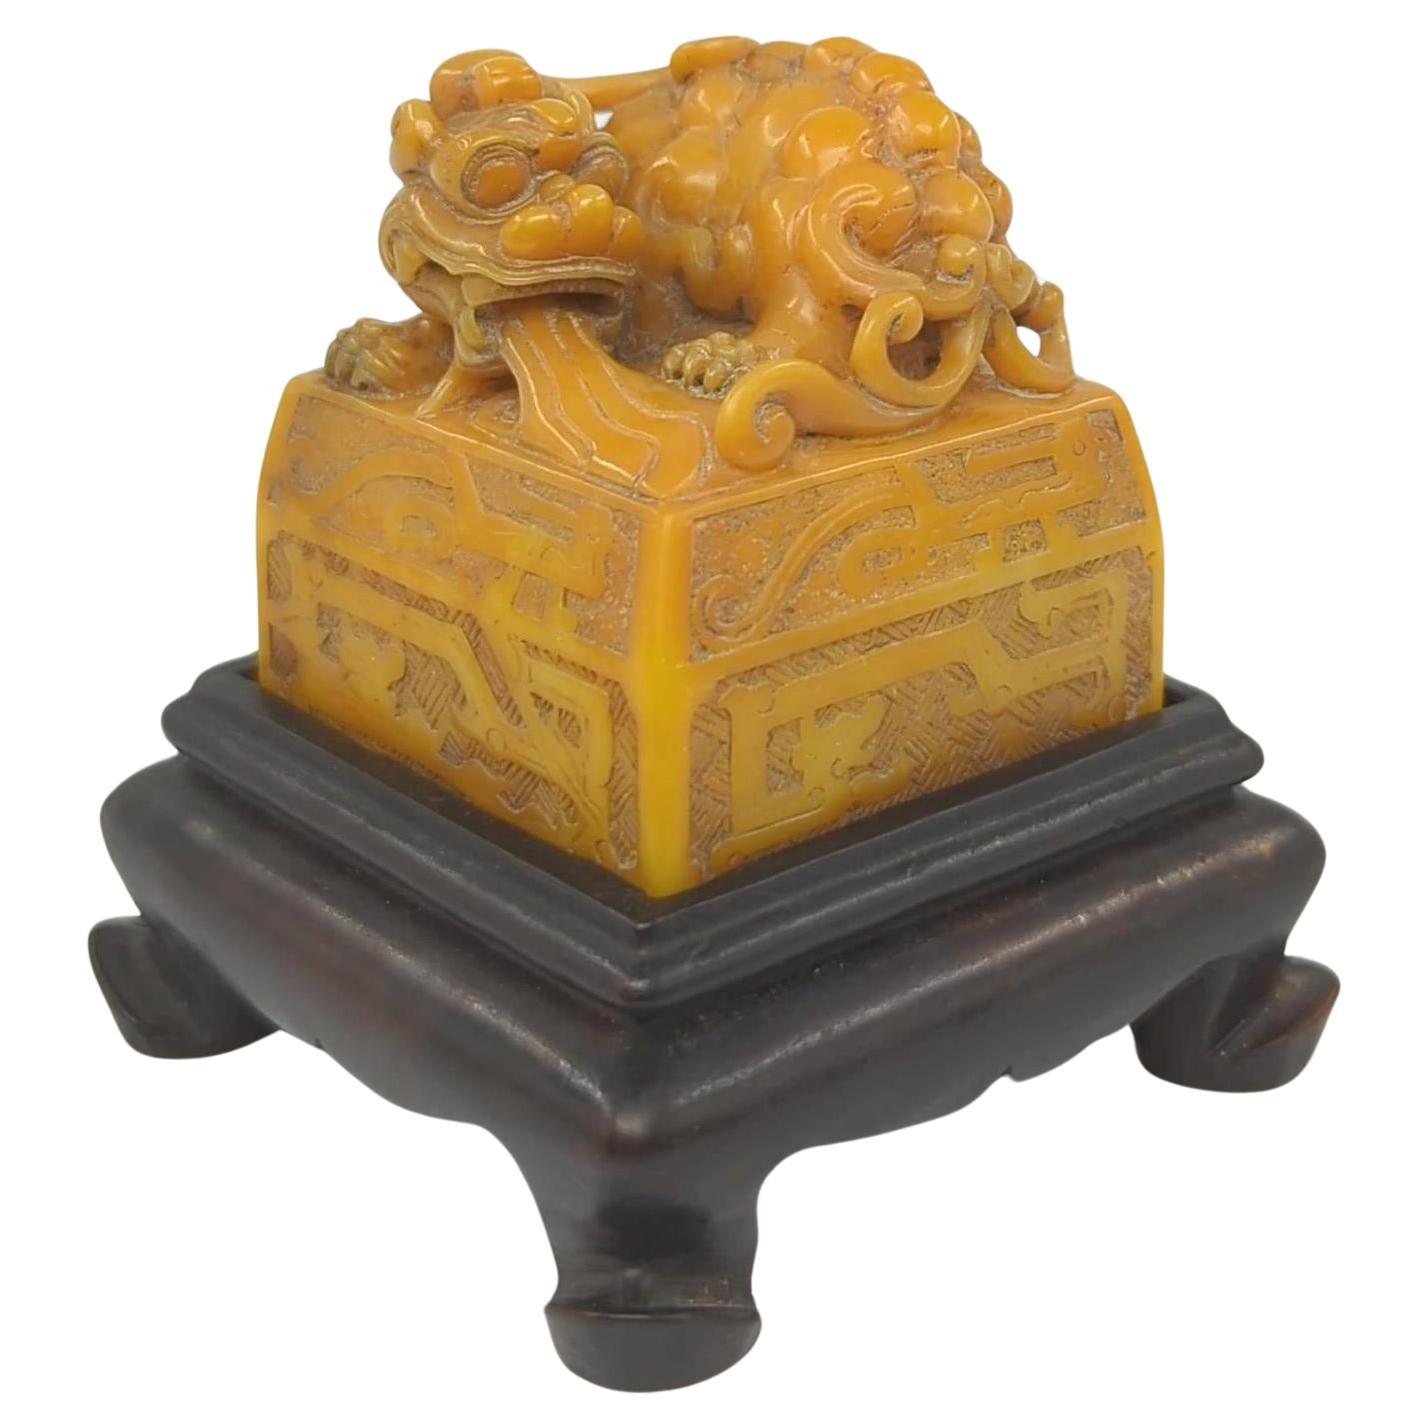 Vintage Chinese Fein geschnitzt Gelb Pixiu Archaic Dragon Seal w/Stand 20.